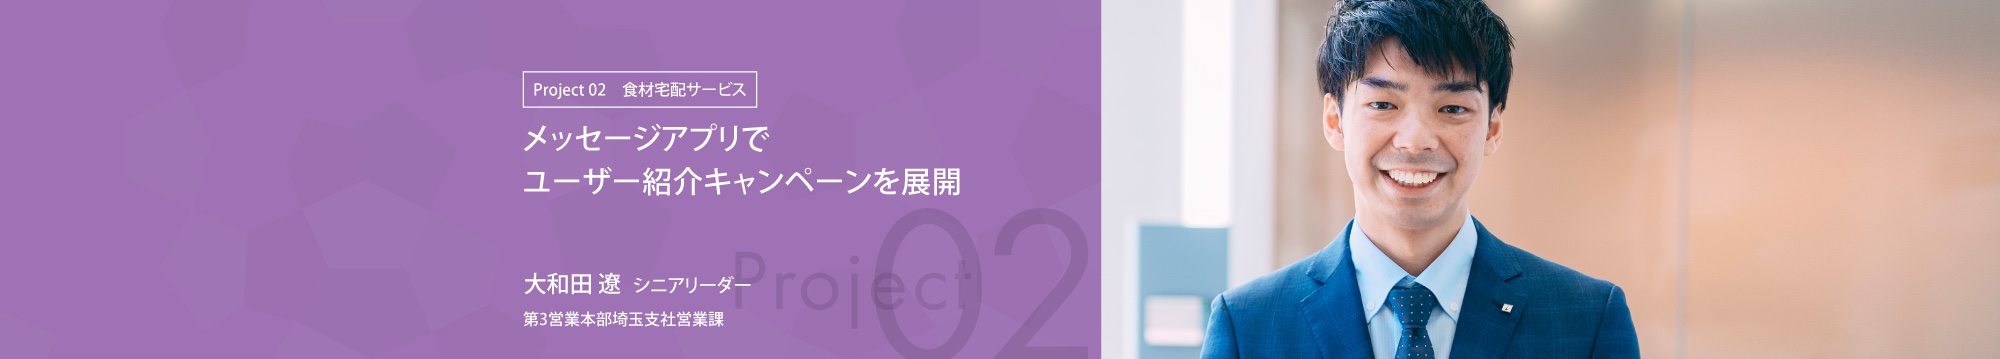 メッセージアプリでユーザー紹介キャンペーンを展開 第3営業本部埼玉支社シニアリーダー 大和田 遼